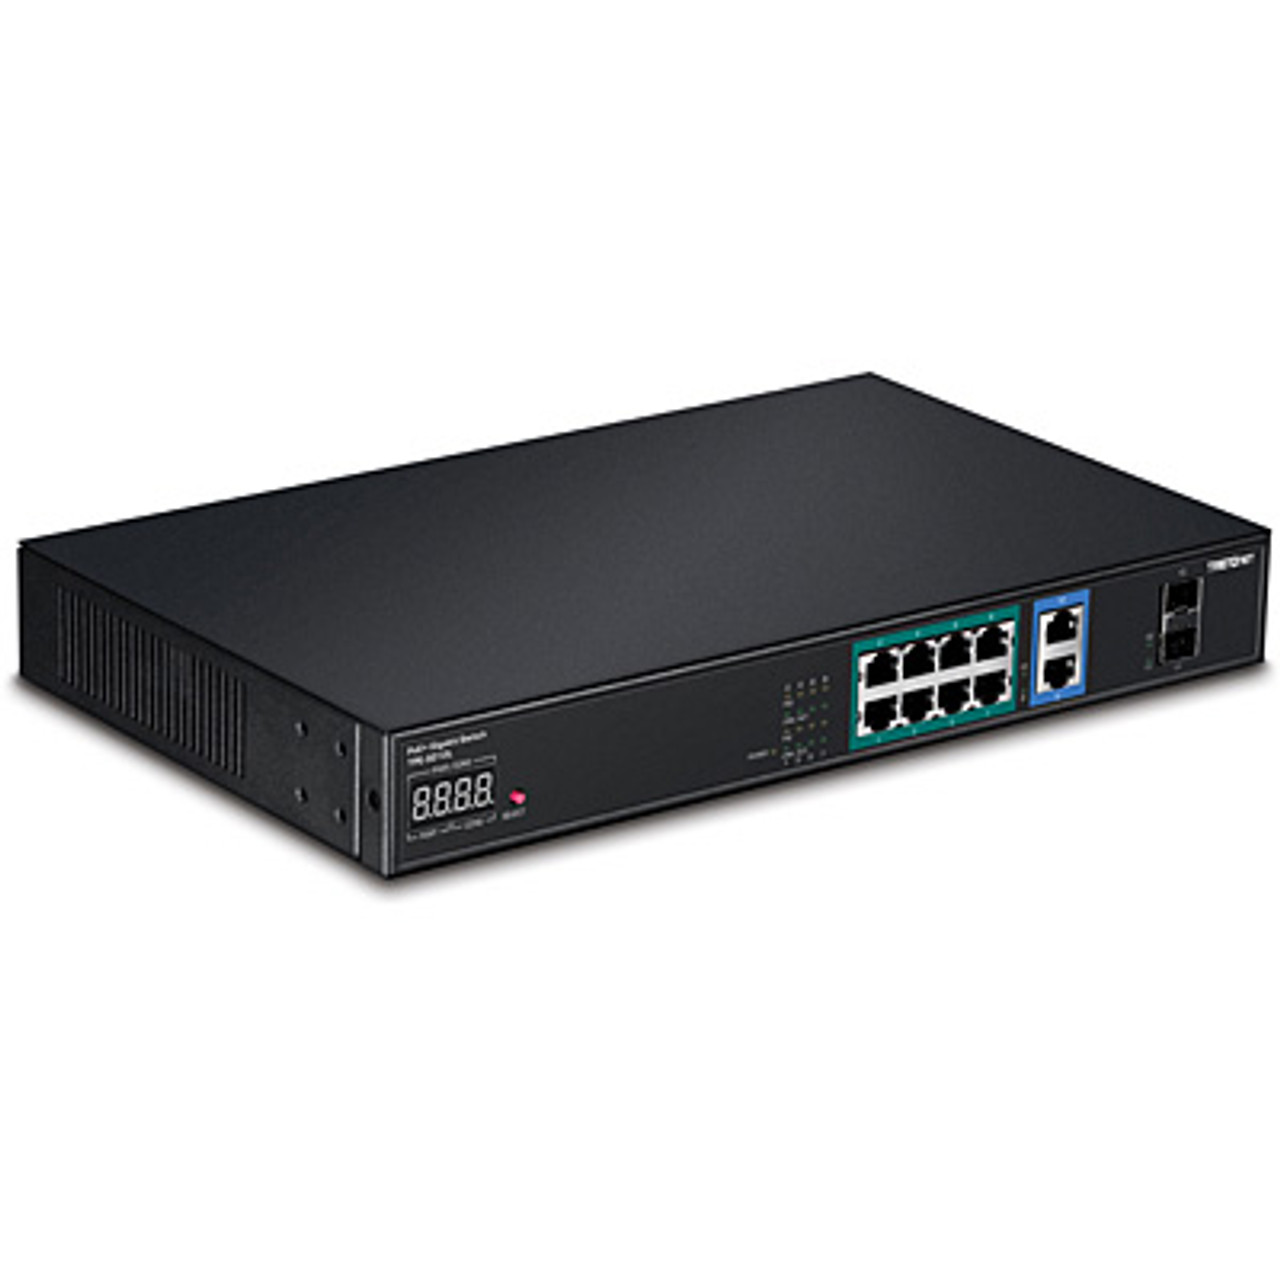 Trendnet TPE-3012L Unmanaged network switch L2 Gigabit Ethernet (10/100/1000) Power over Ethernet (Po